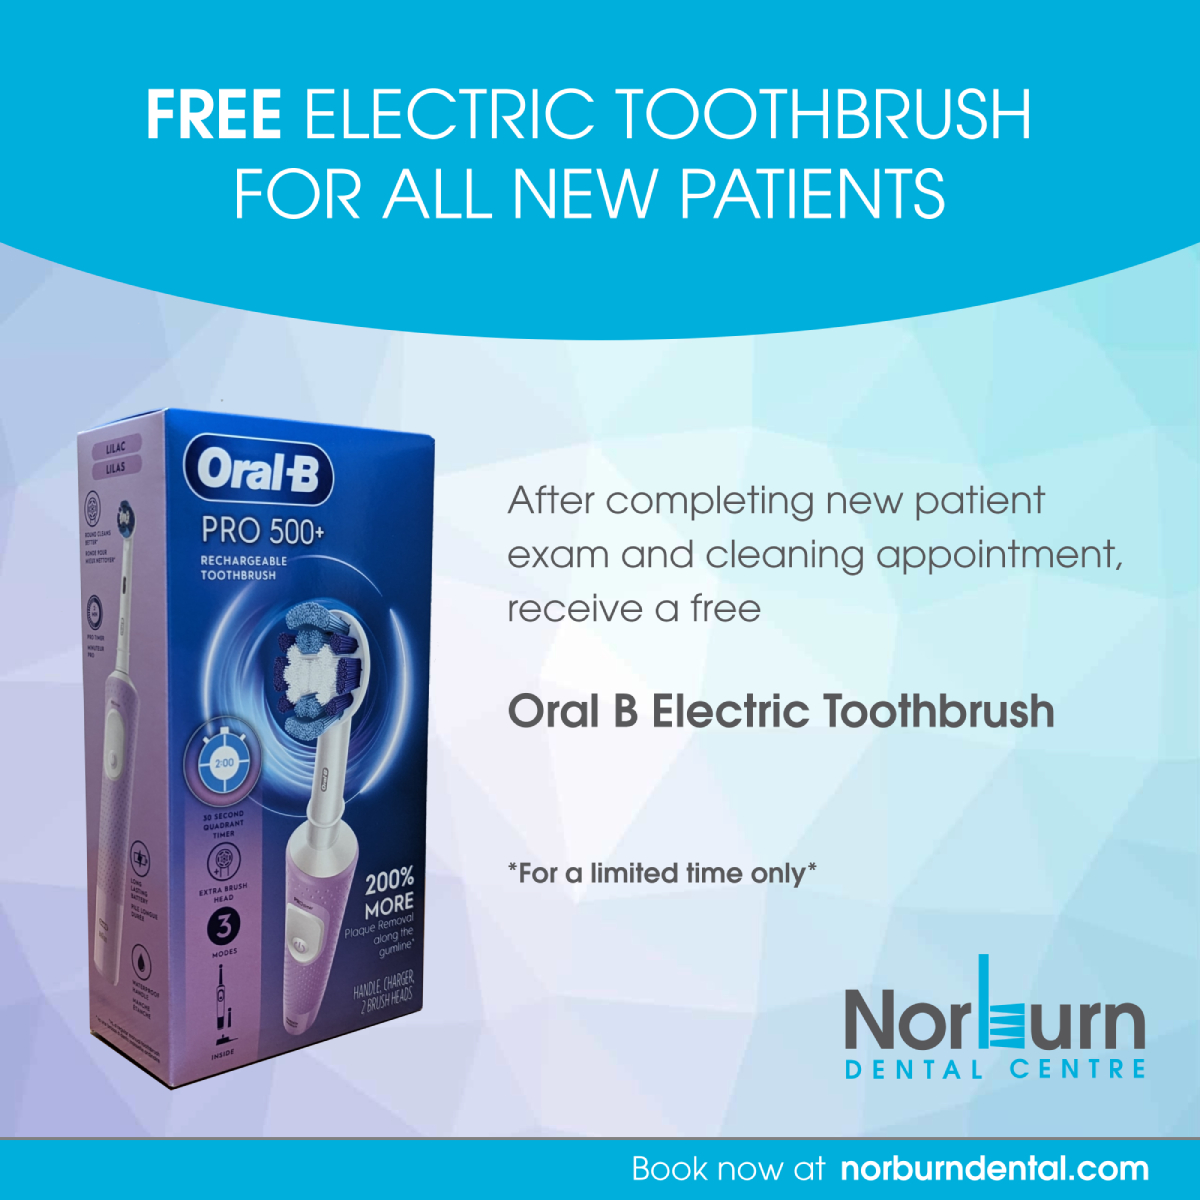 Norburn Dental promo - Electric toothbrush